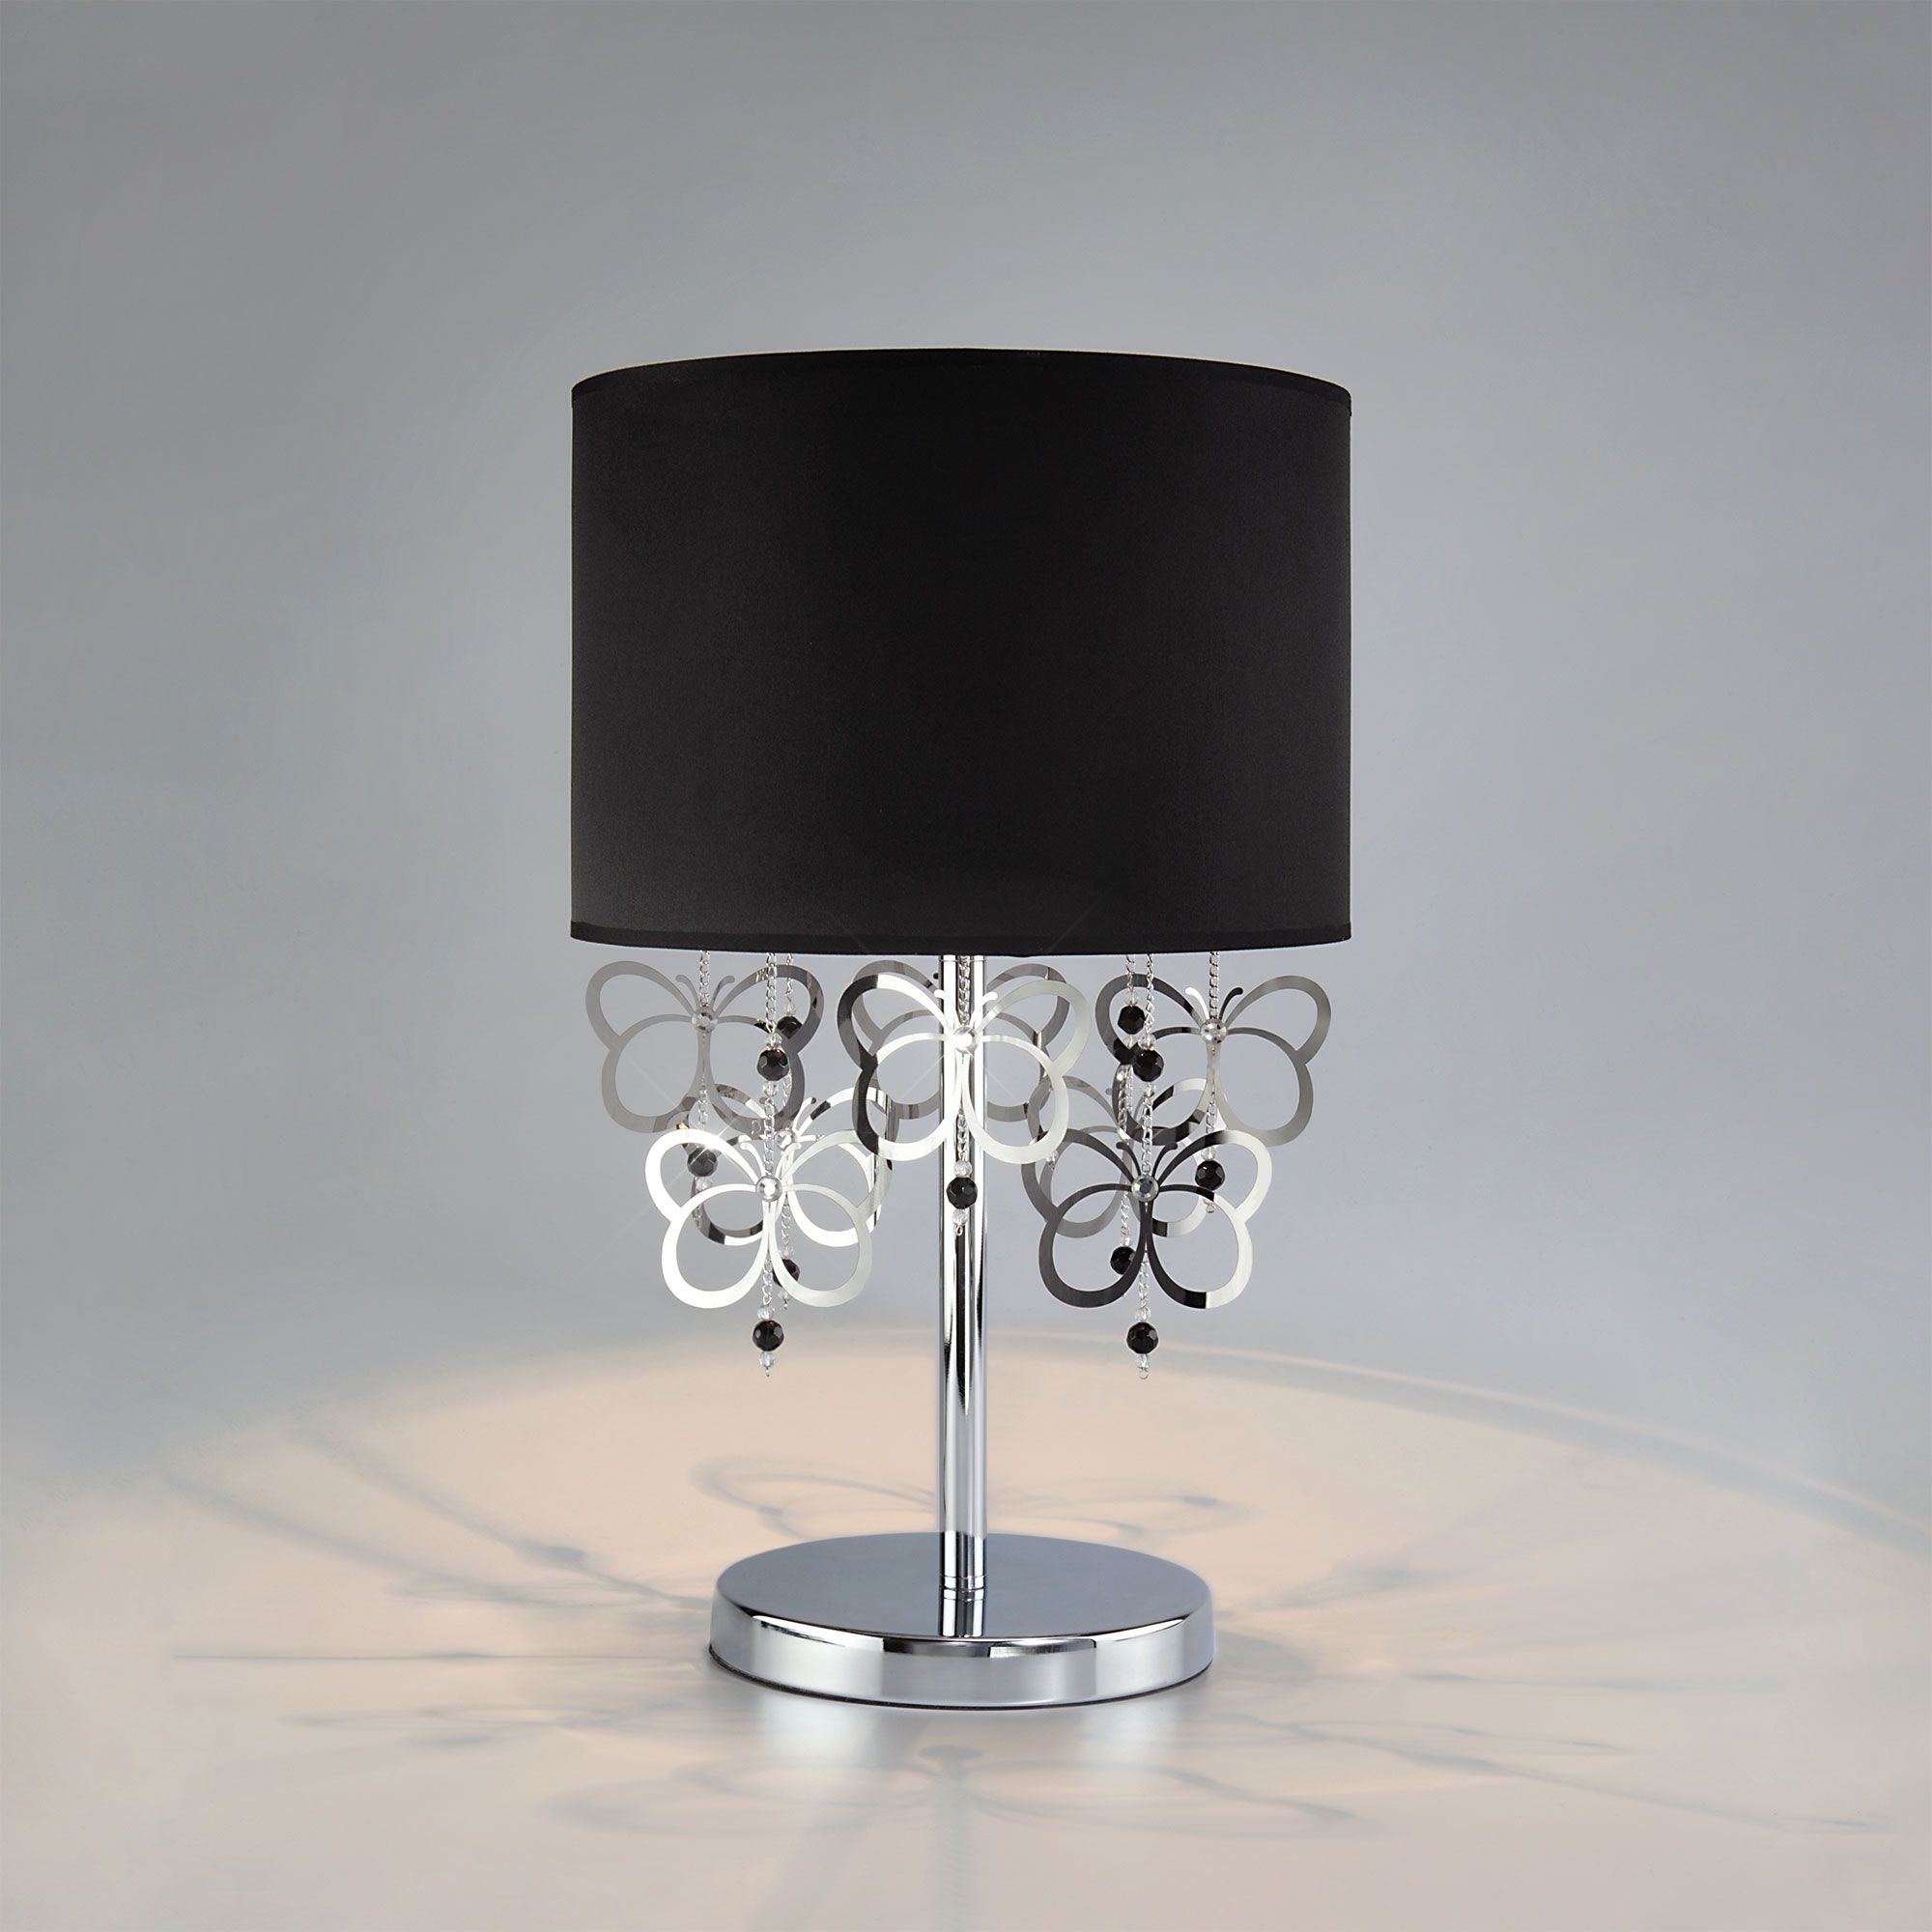 Настольная лампа с абажуром Bogate's Papillon 01094/1 черный / хром. Фото 1